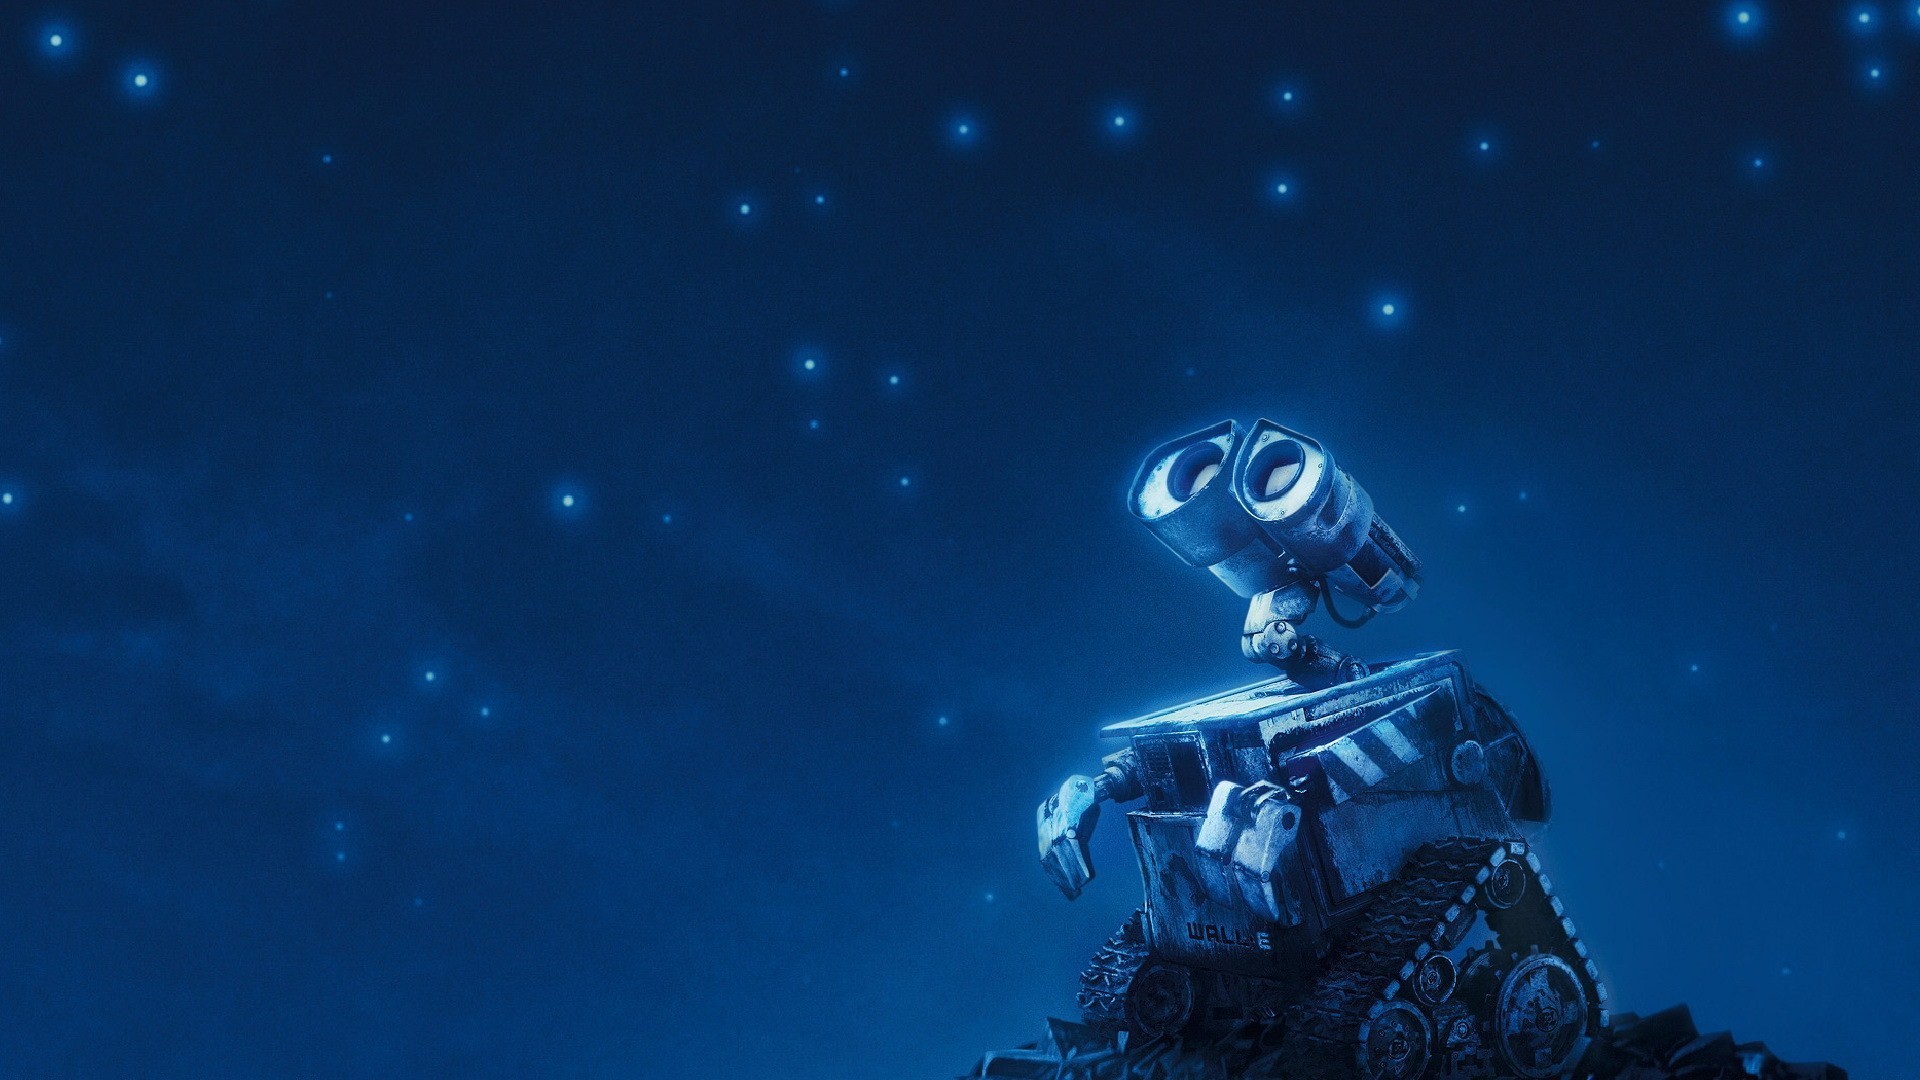 Робот WALL·E смотрит на звезды Обои для рабочего стола 600x3